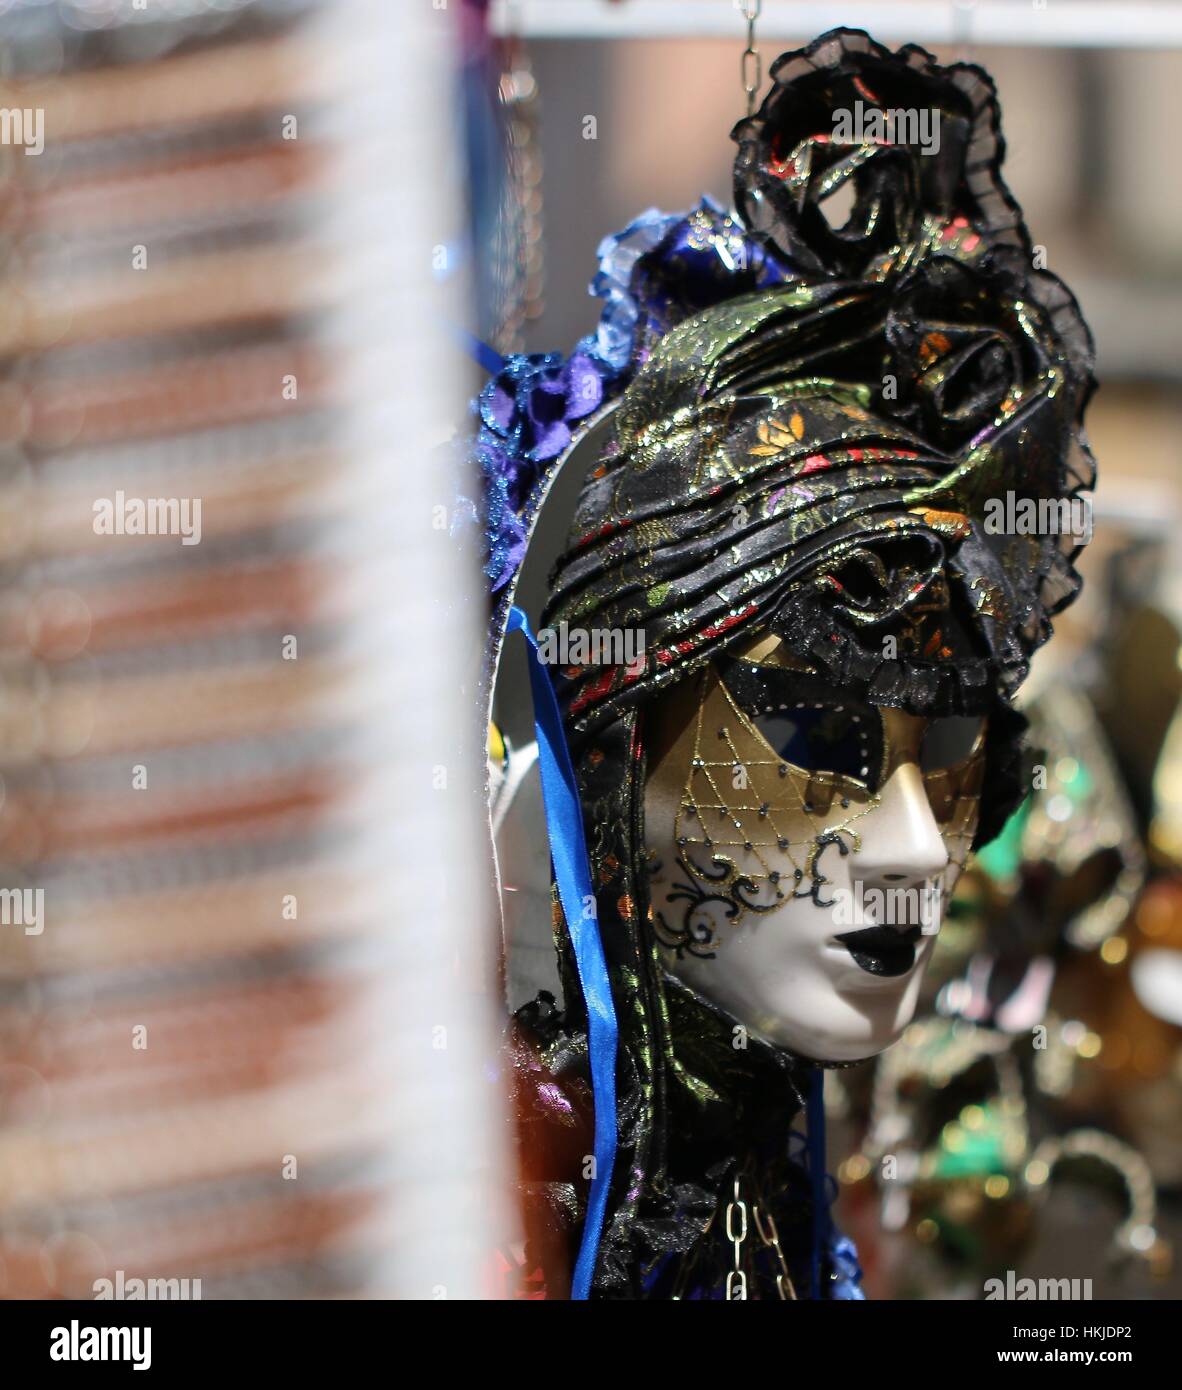 Venezianische Masquerade Ball Masken auf einem Marktstand in Venedig Italien Stockfoto